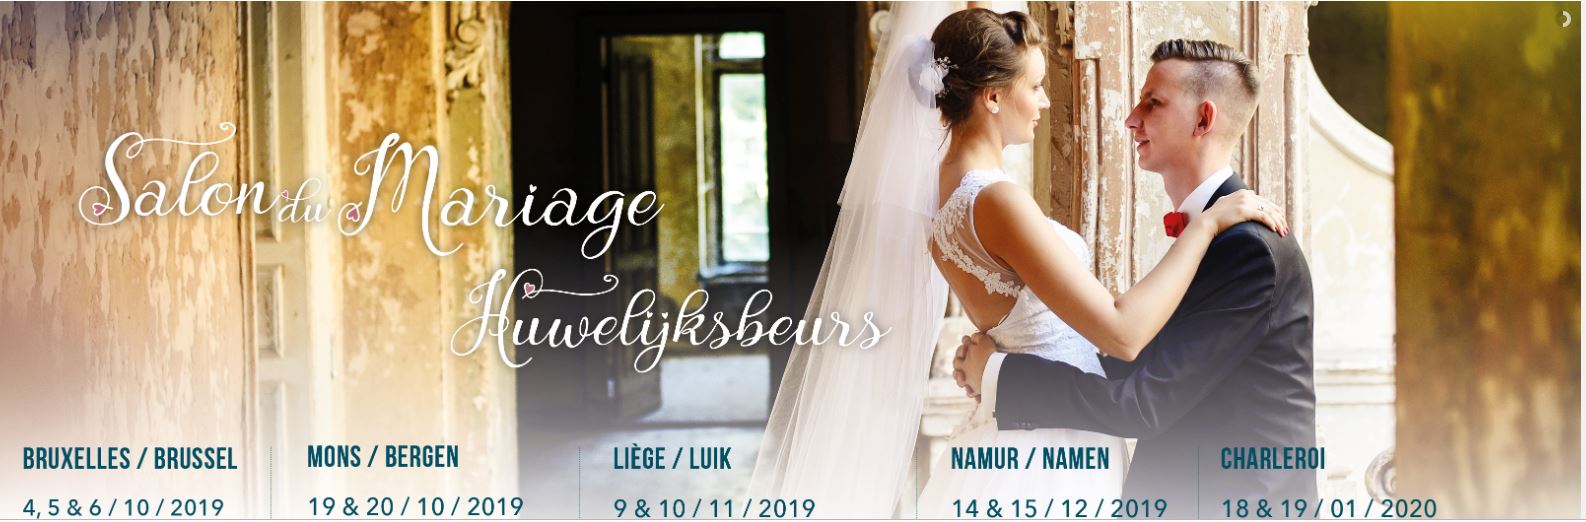 Salon du mariage - Liège - 9 et 10 novembre 2019